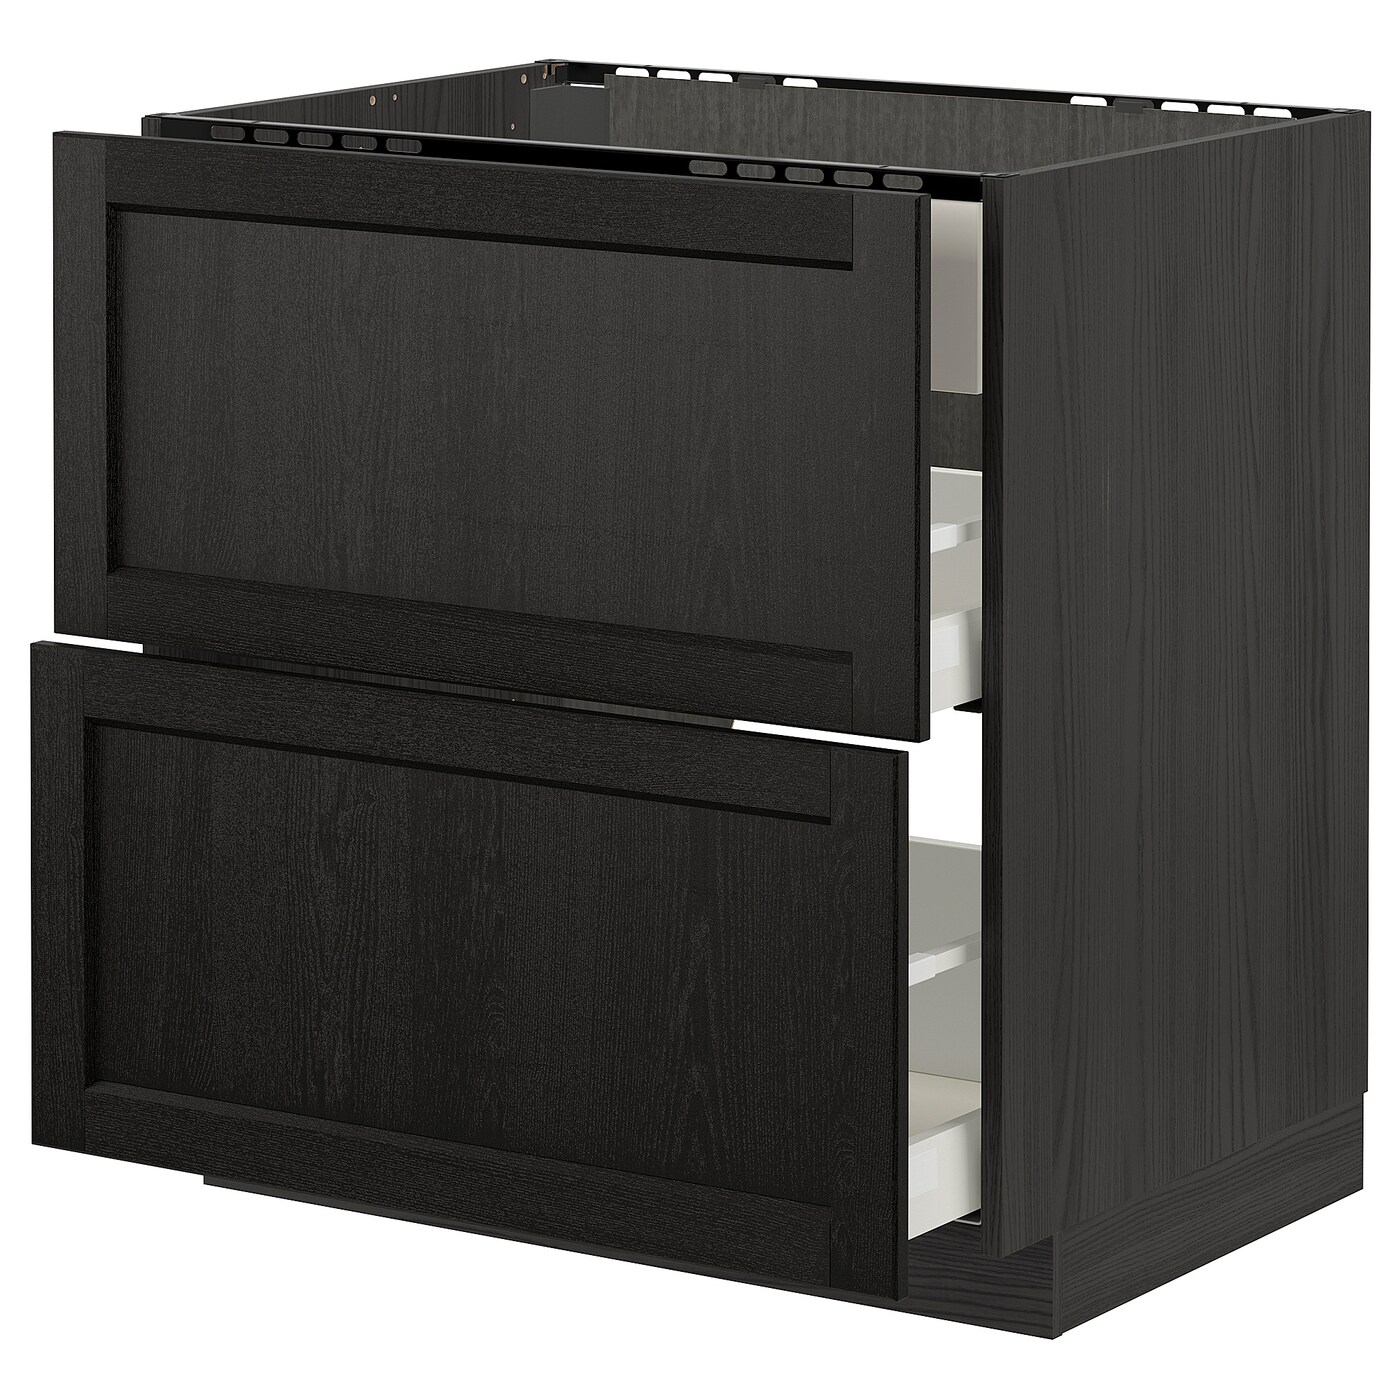 Напольный шкаф - IKEA METOD MAXIMERA, 88x62x80см, черный, МЕТОД МАКСИМЕРА ИКЕА